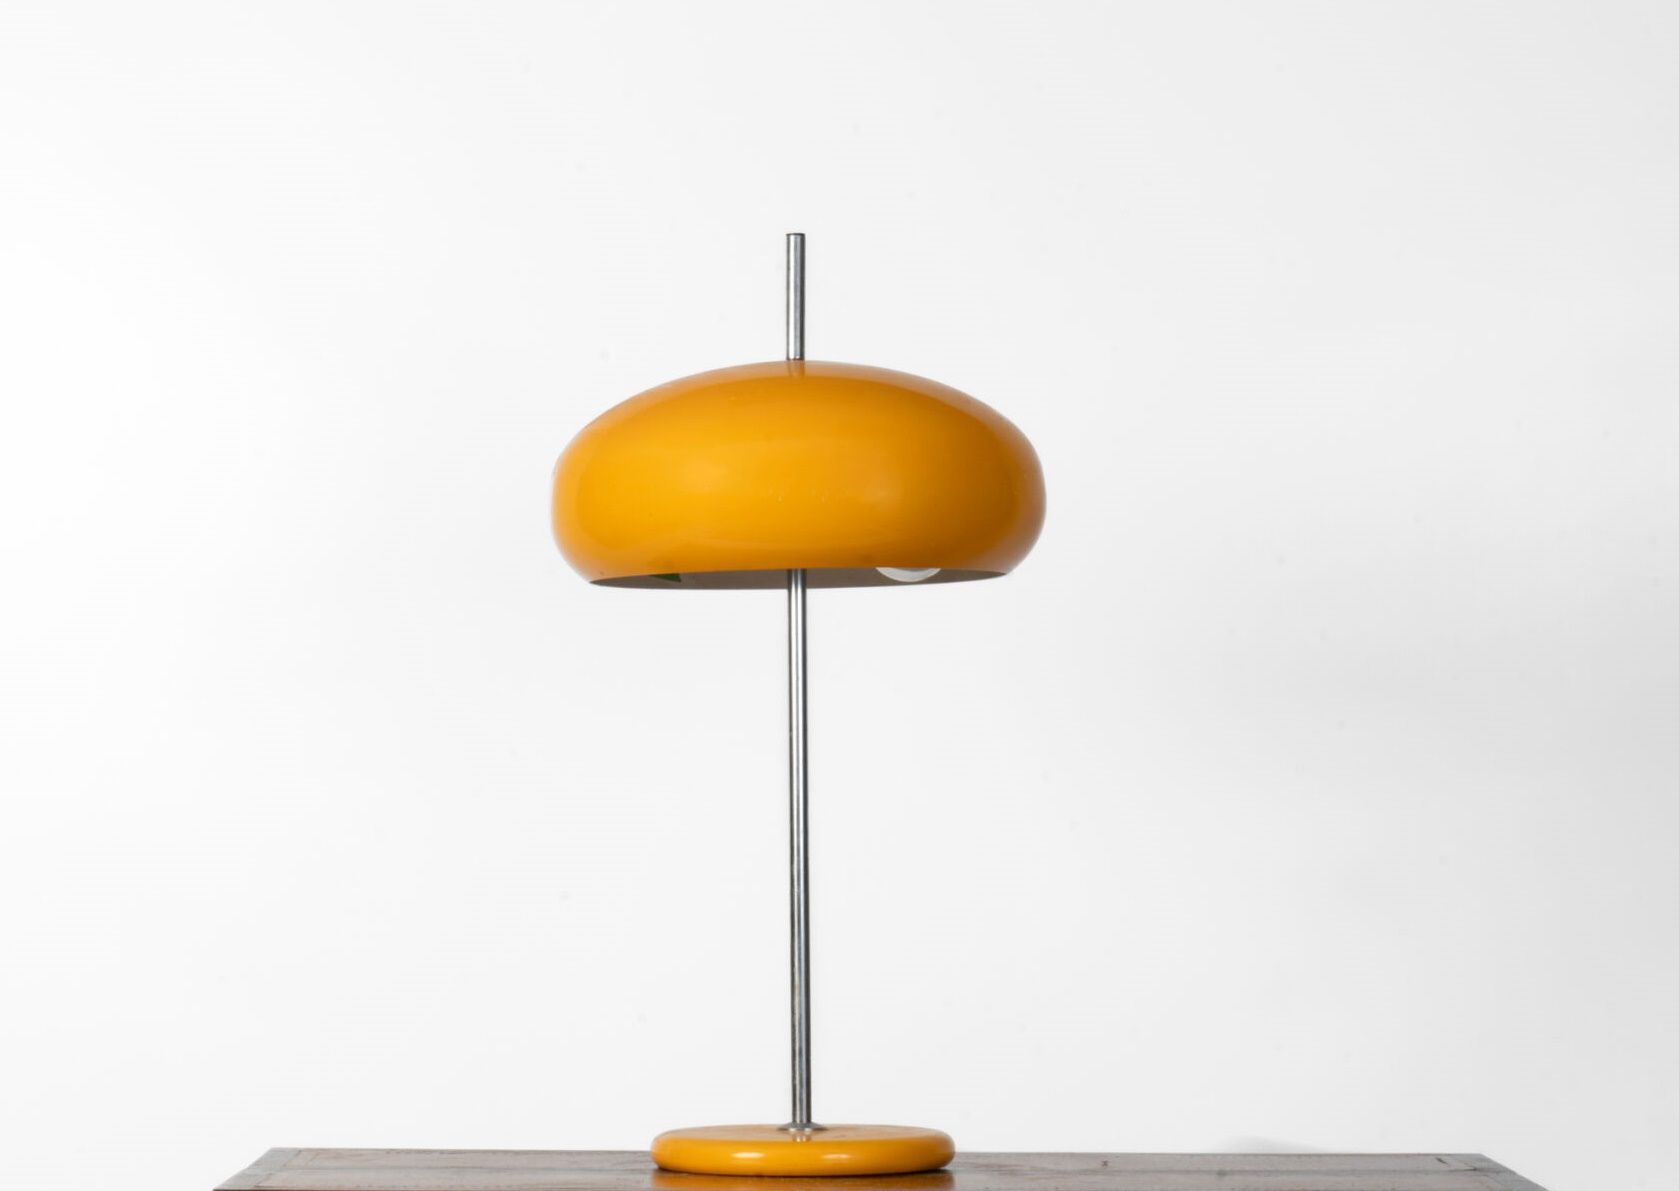 Null 黄色镀铬金属蘑菇灯。约 1970 年。
尺寸：60 厘米